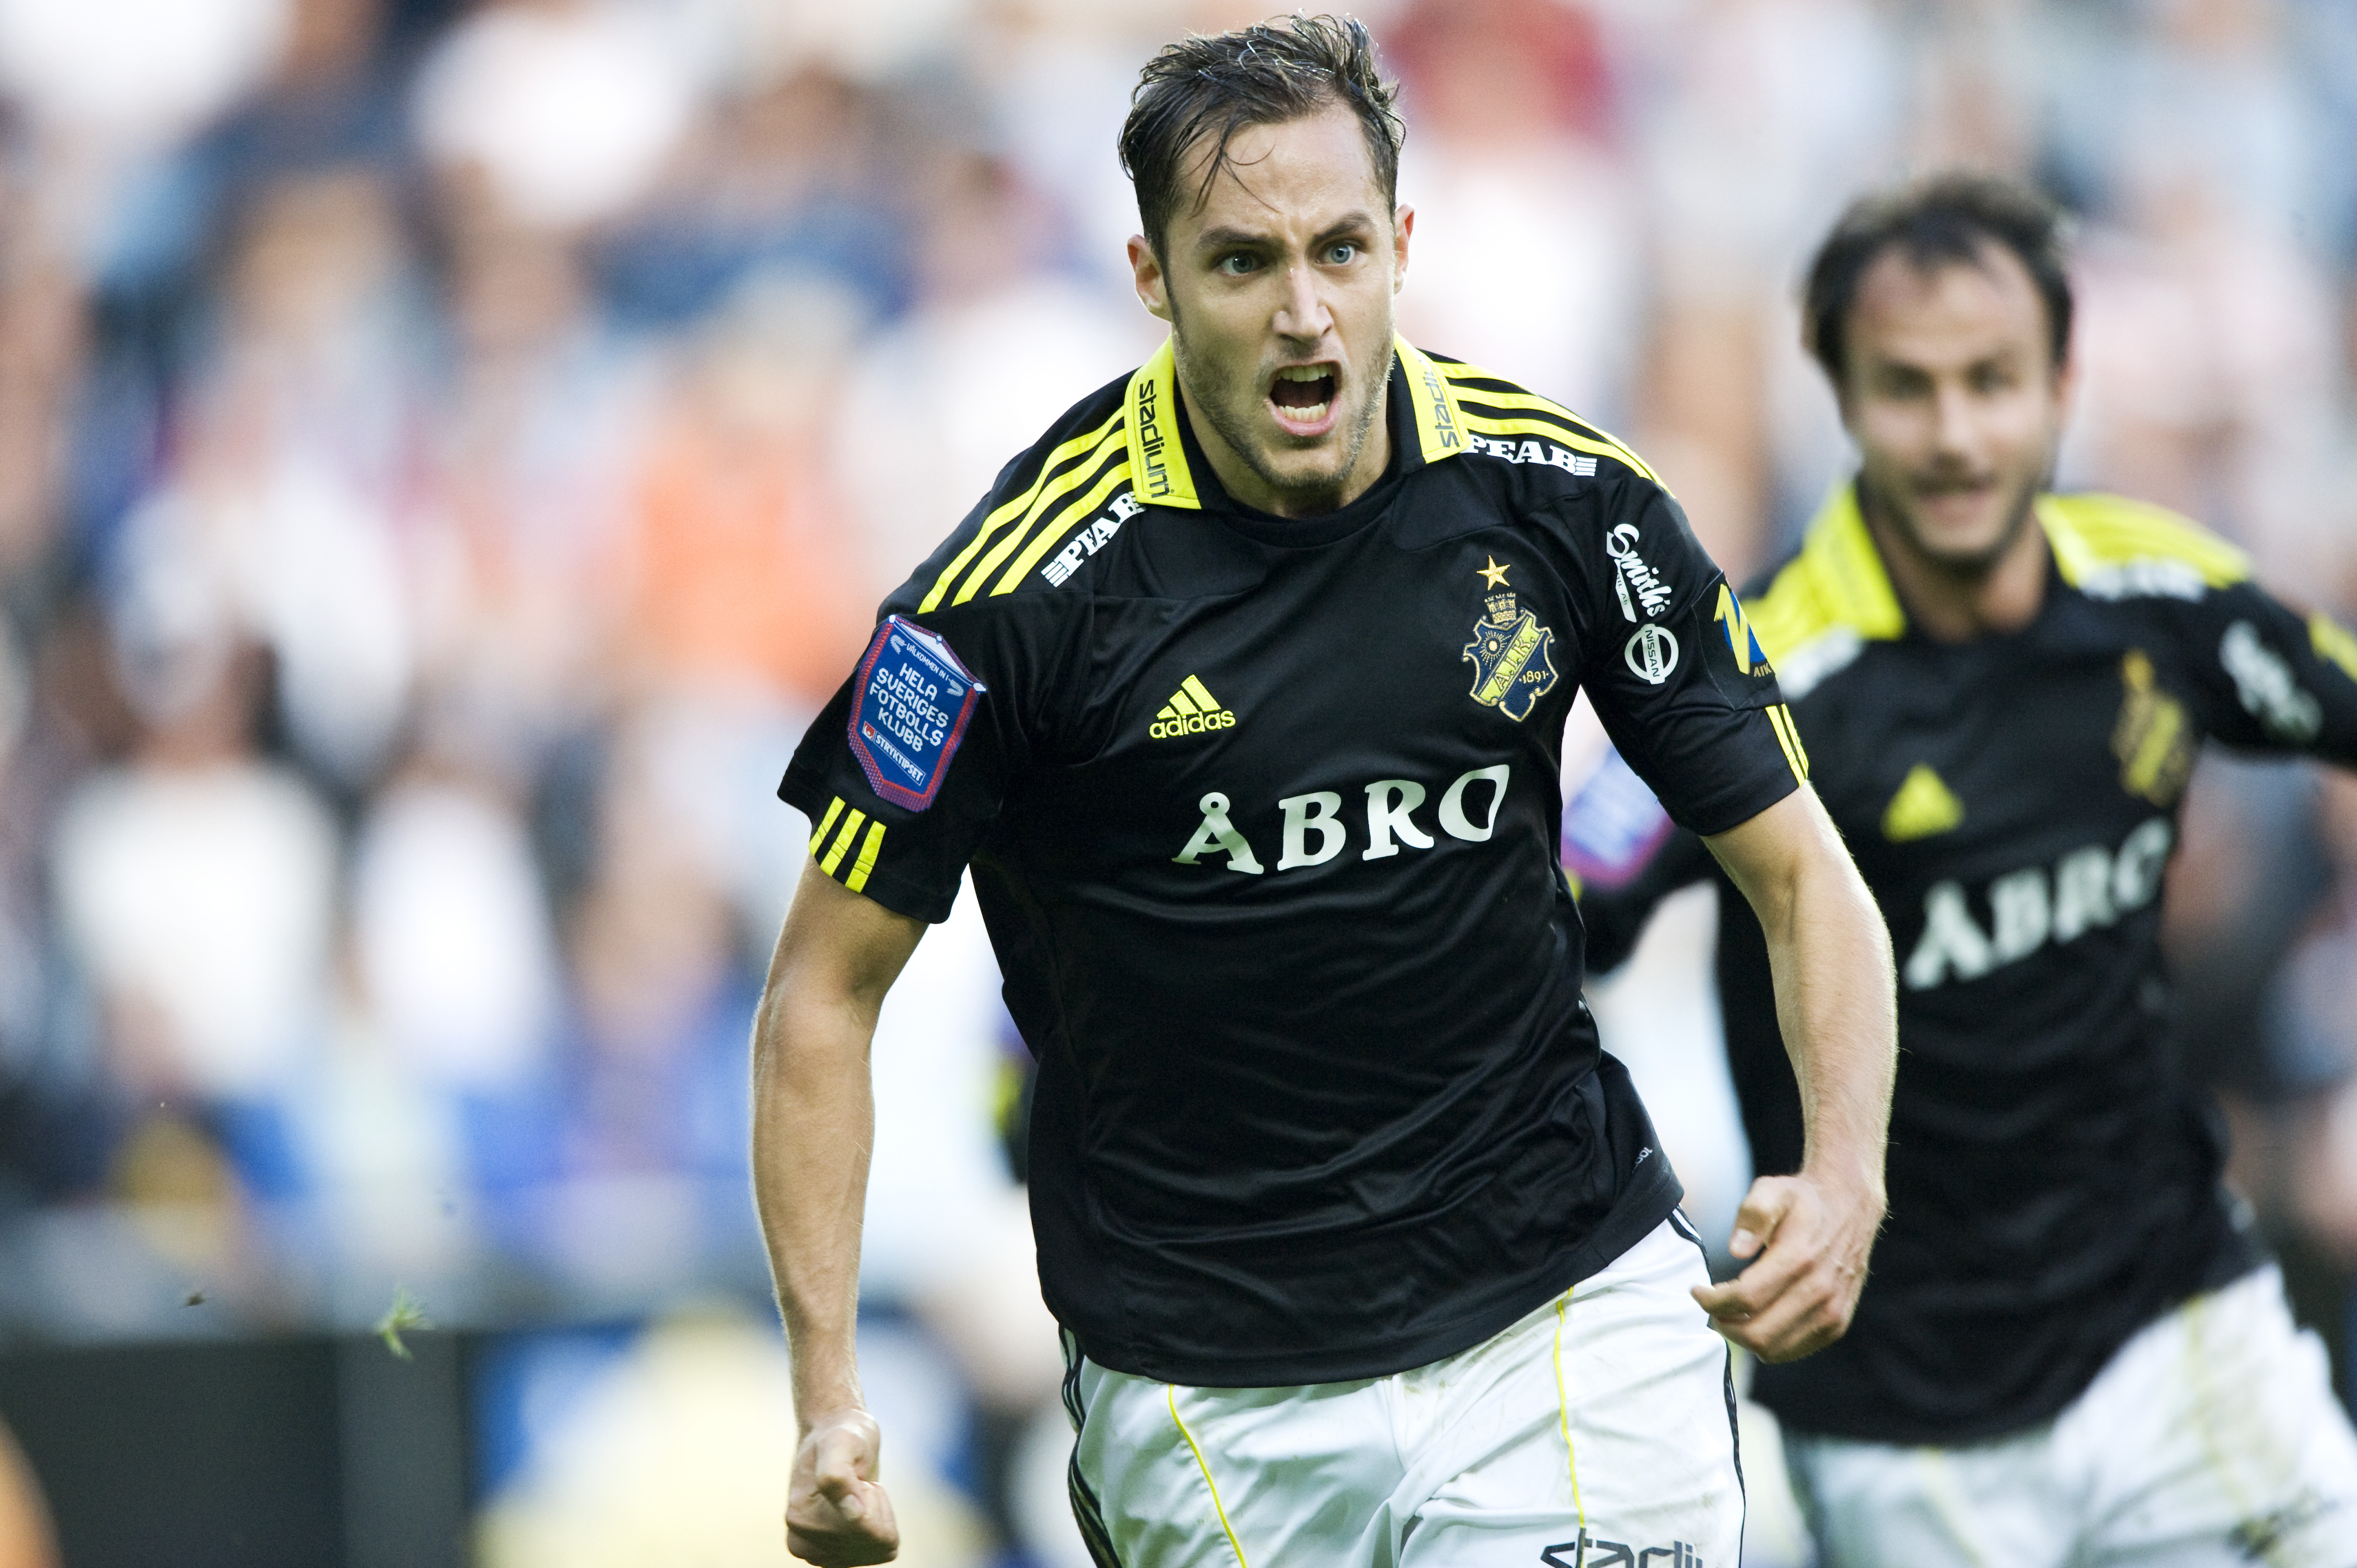 Niklas Backman är efter sju veckor tillbaka från skada, nu har han en svår uppgift när han åter igen ska slåss om en plats i AIK:s startelva.